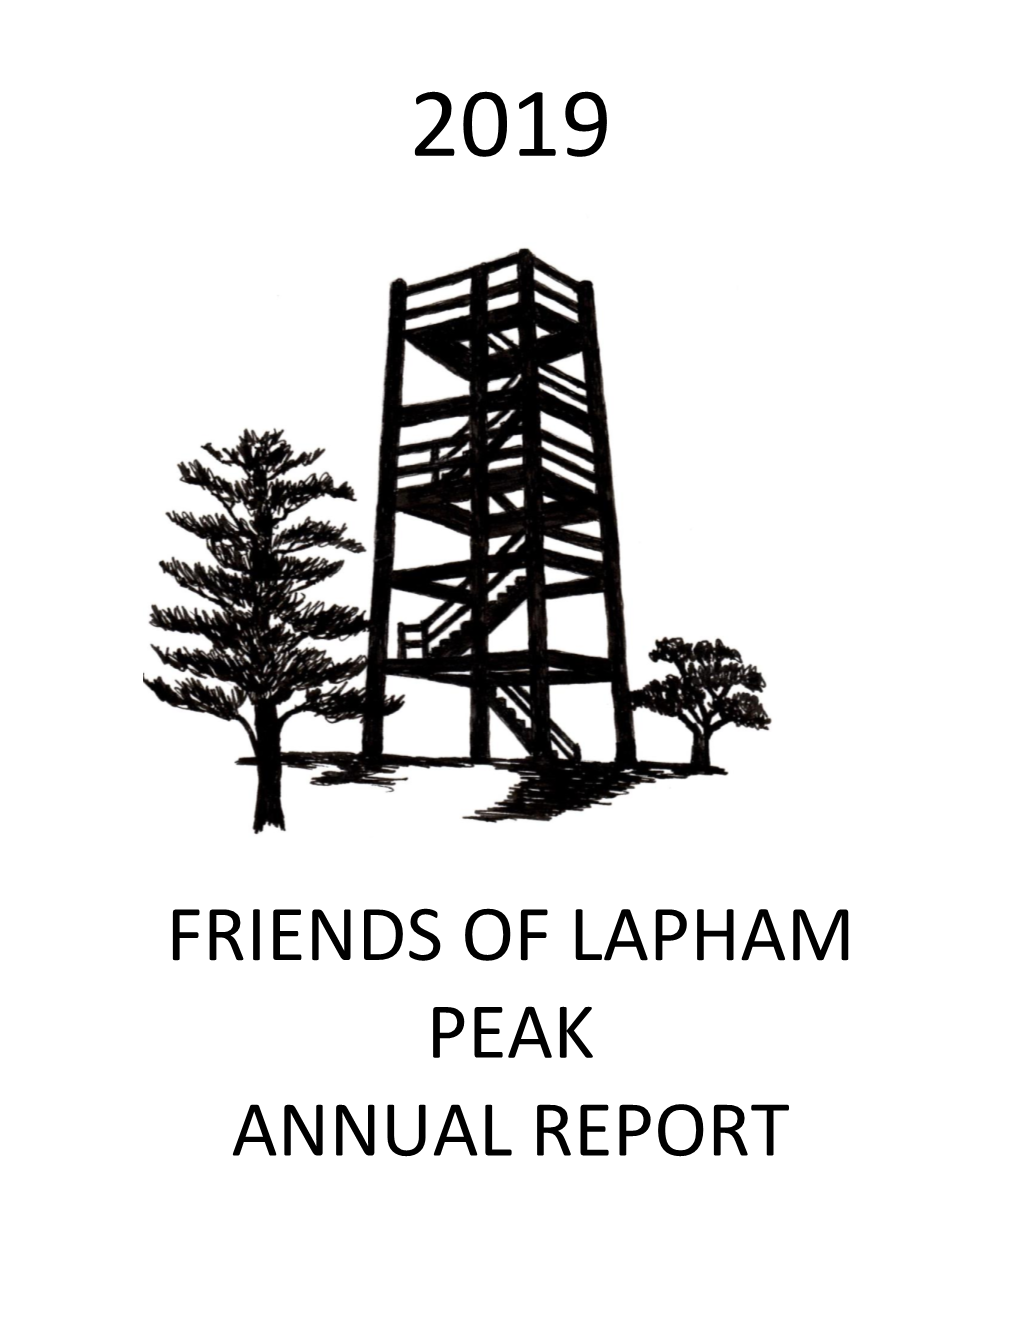 FRIENDS of LAPHAM PEAK ANNUAL REPORT Lapham Peak Friends